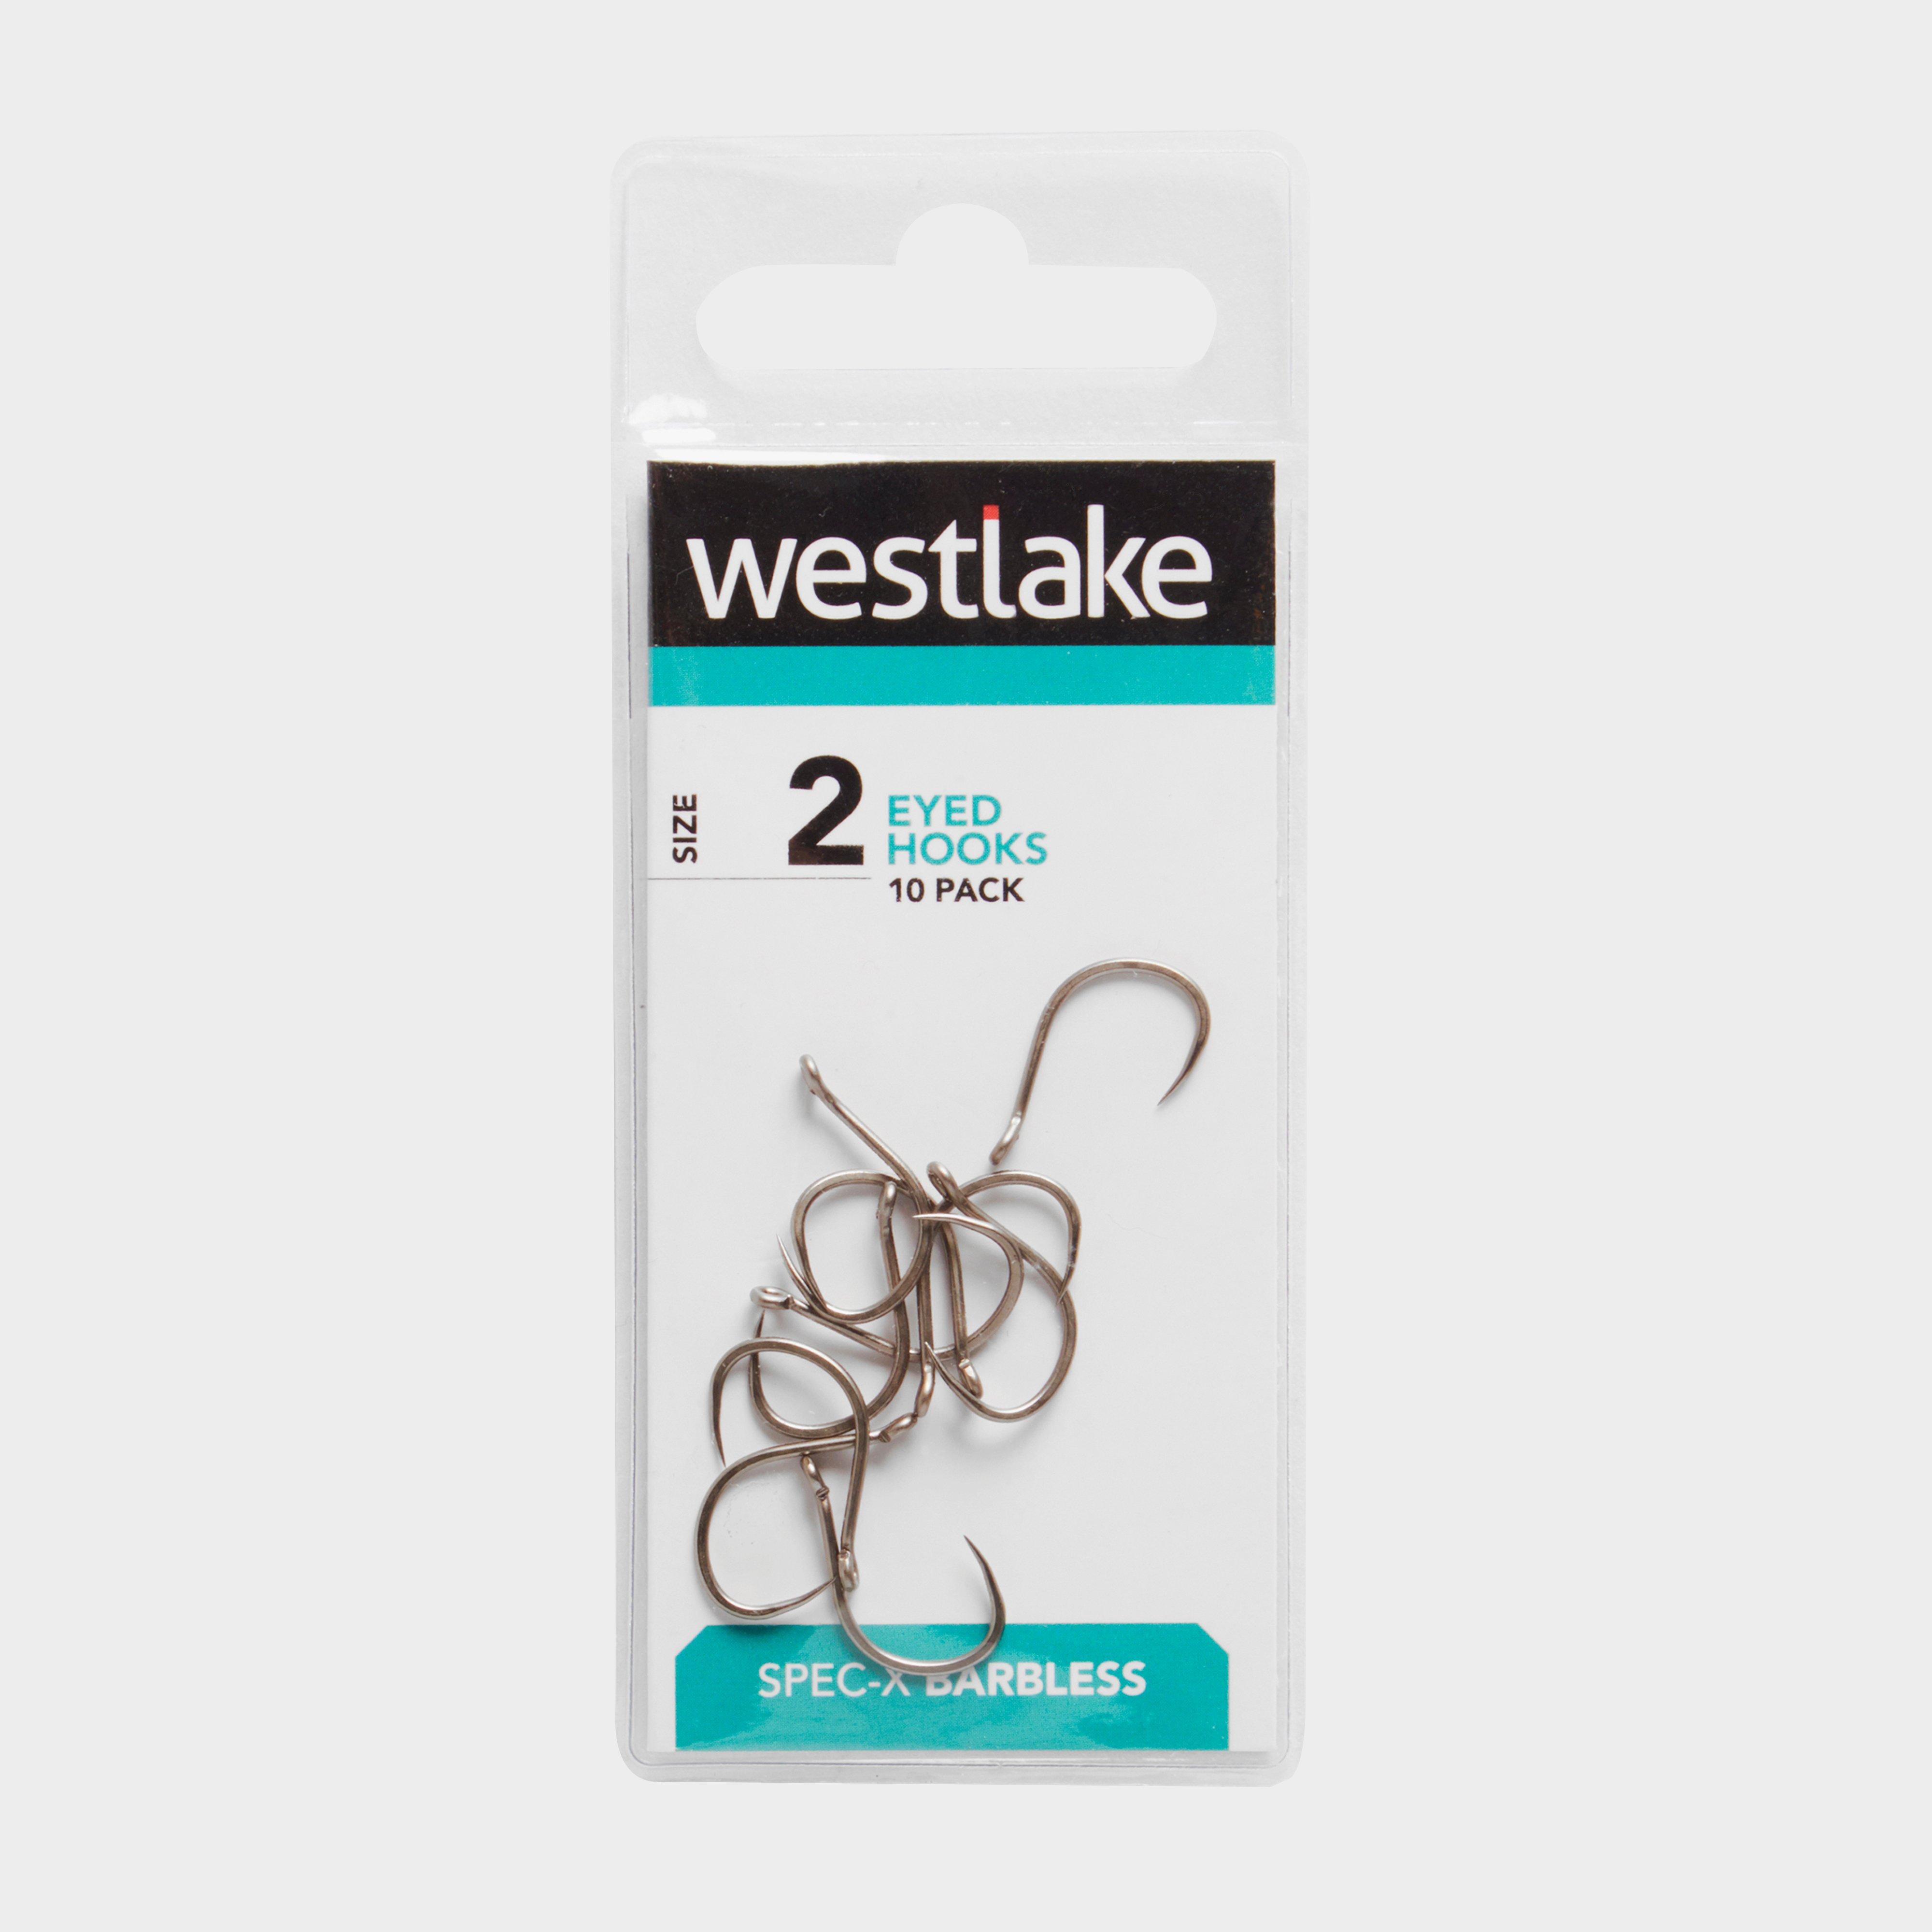 Westlake Barbless Eyed Hooks (size 2)